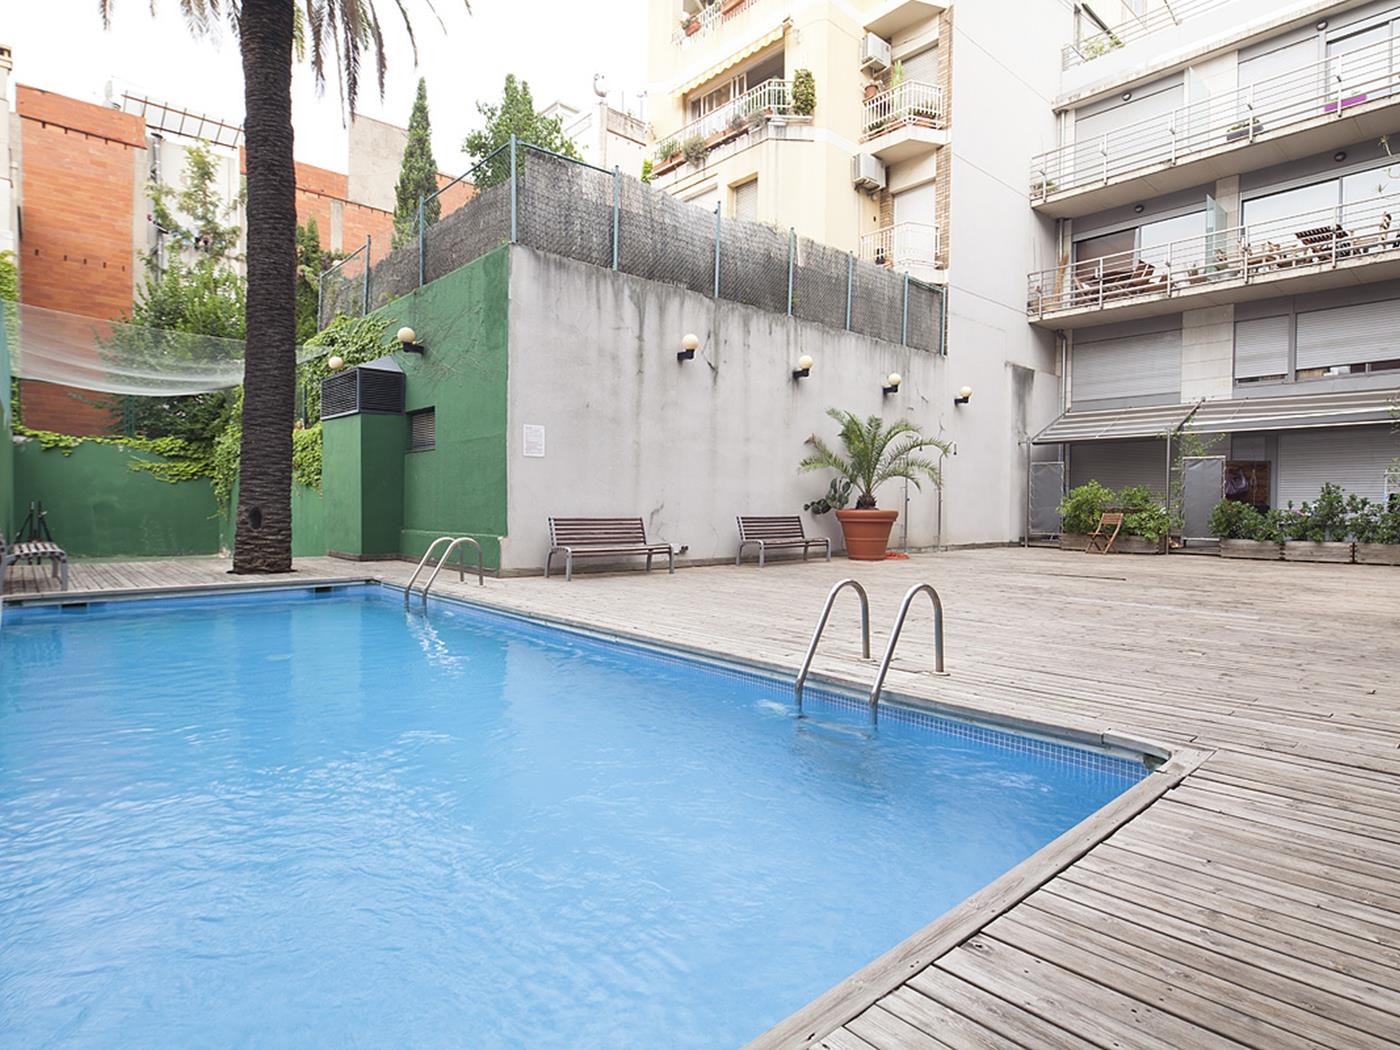 دوبلكس بالقرب من حديقة غويل مع حمام سباحة - My Space Barcelona شقة